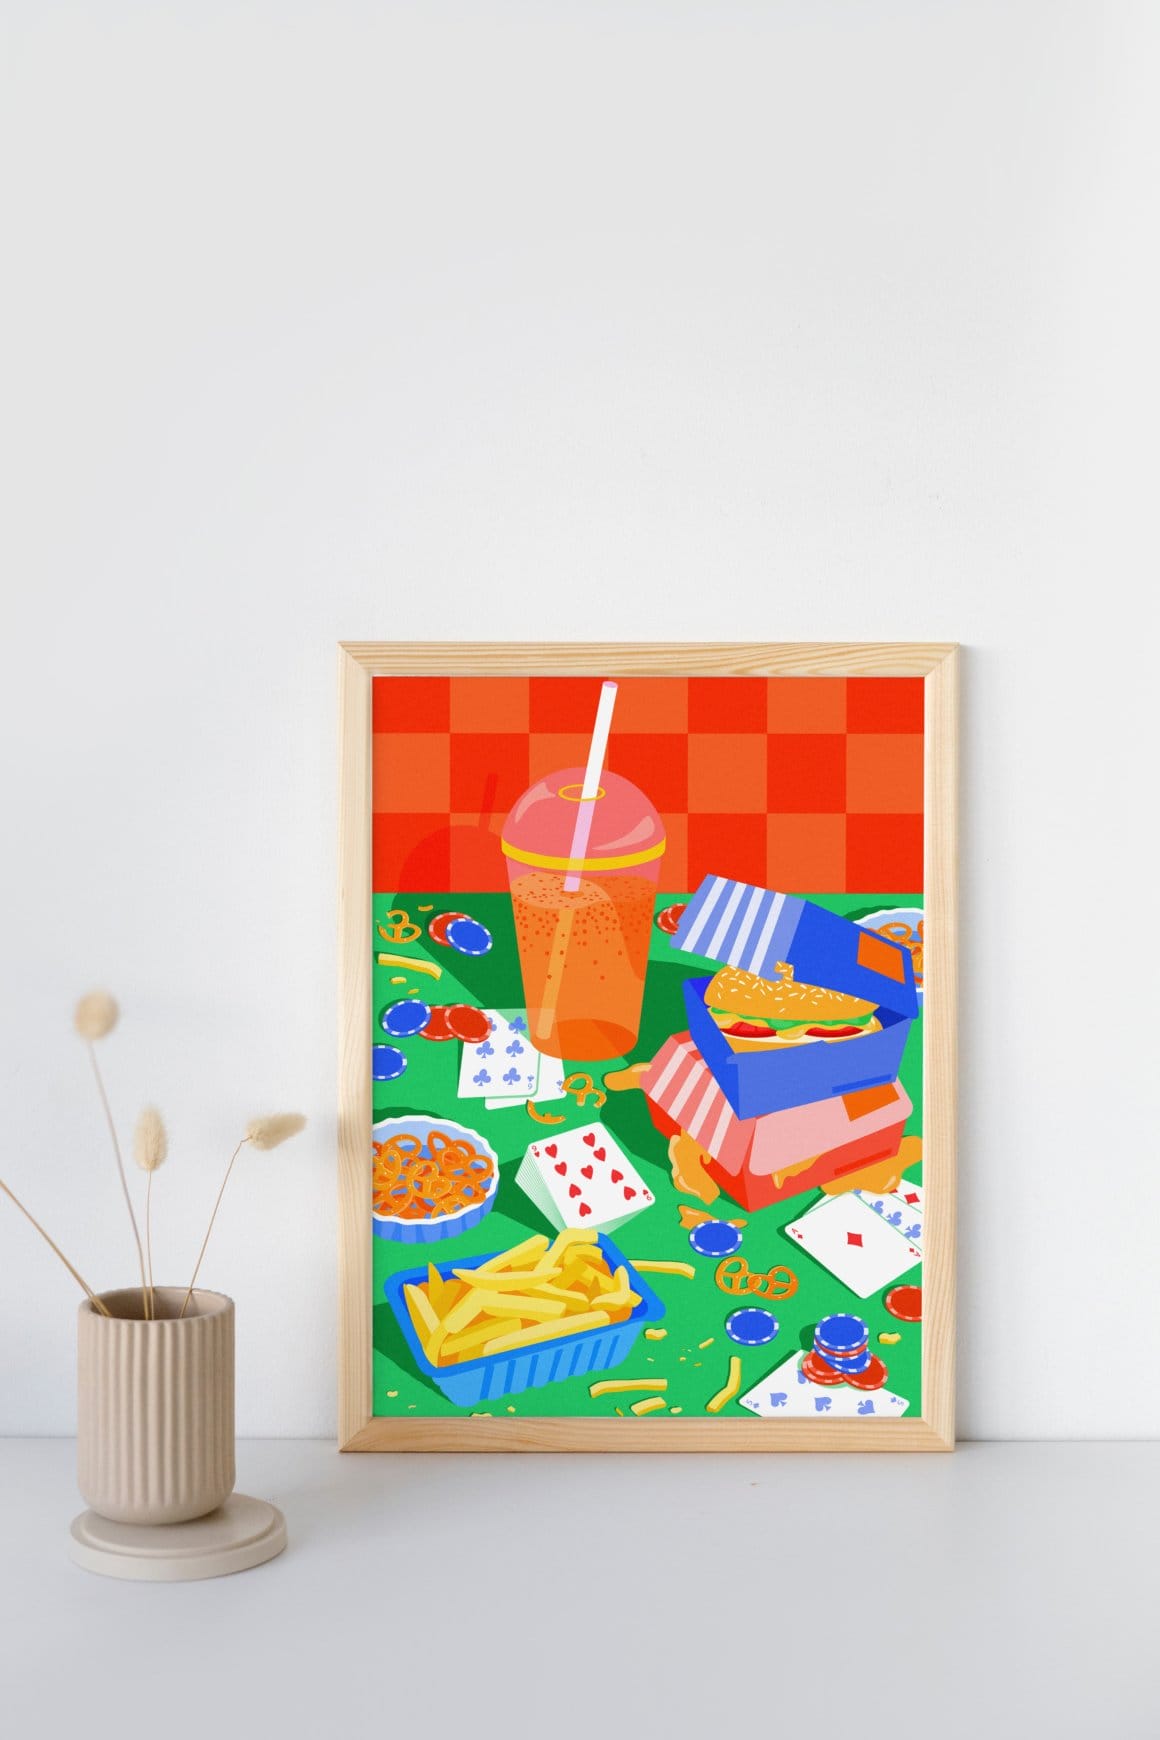 Photographie d'une illustration encadrée, avec plusieurs éléments colorés (frites, jeu de cartes, hamburgers etc.) 
